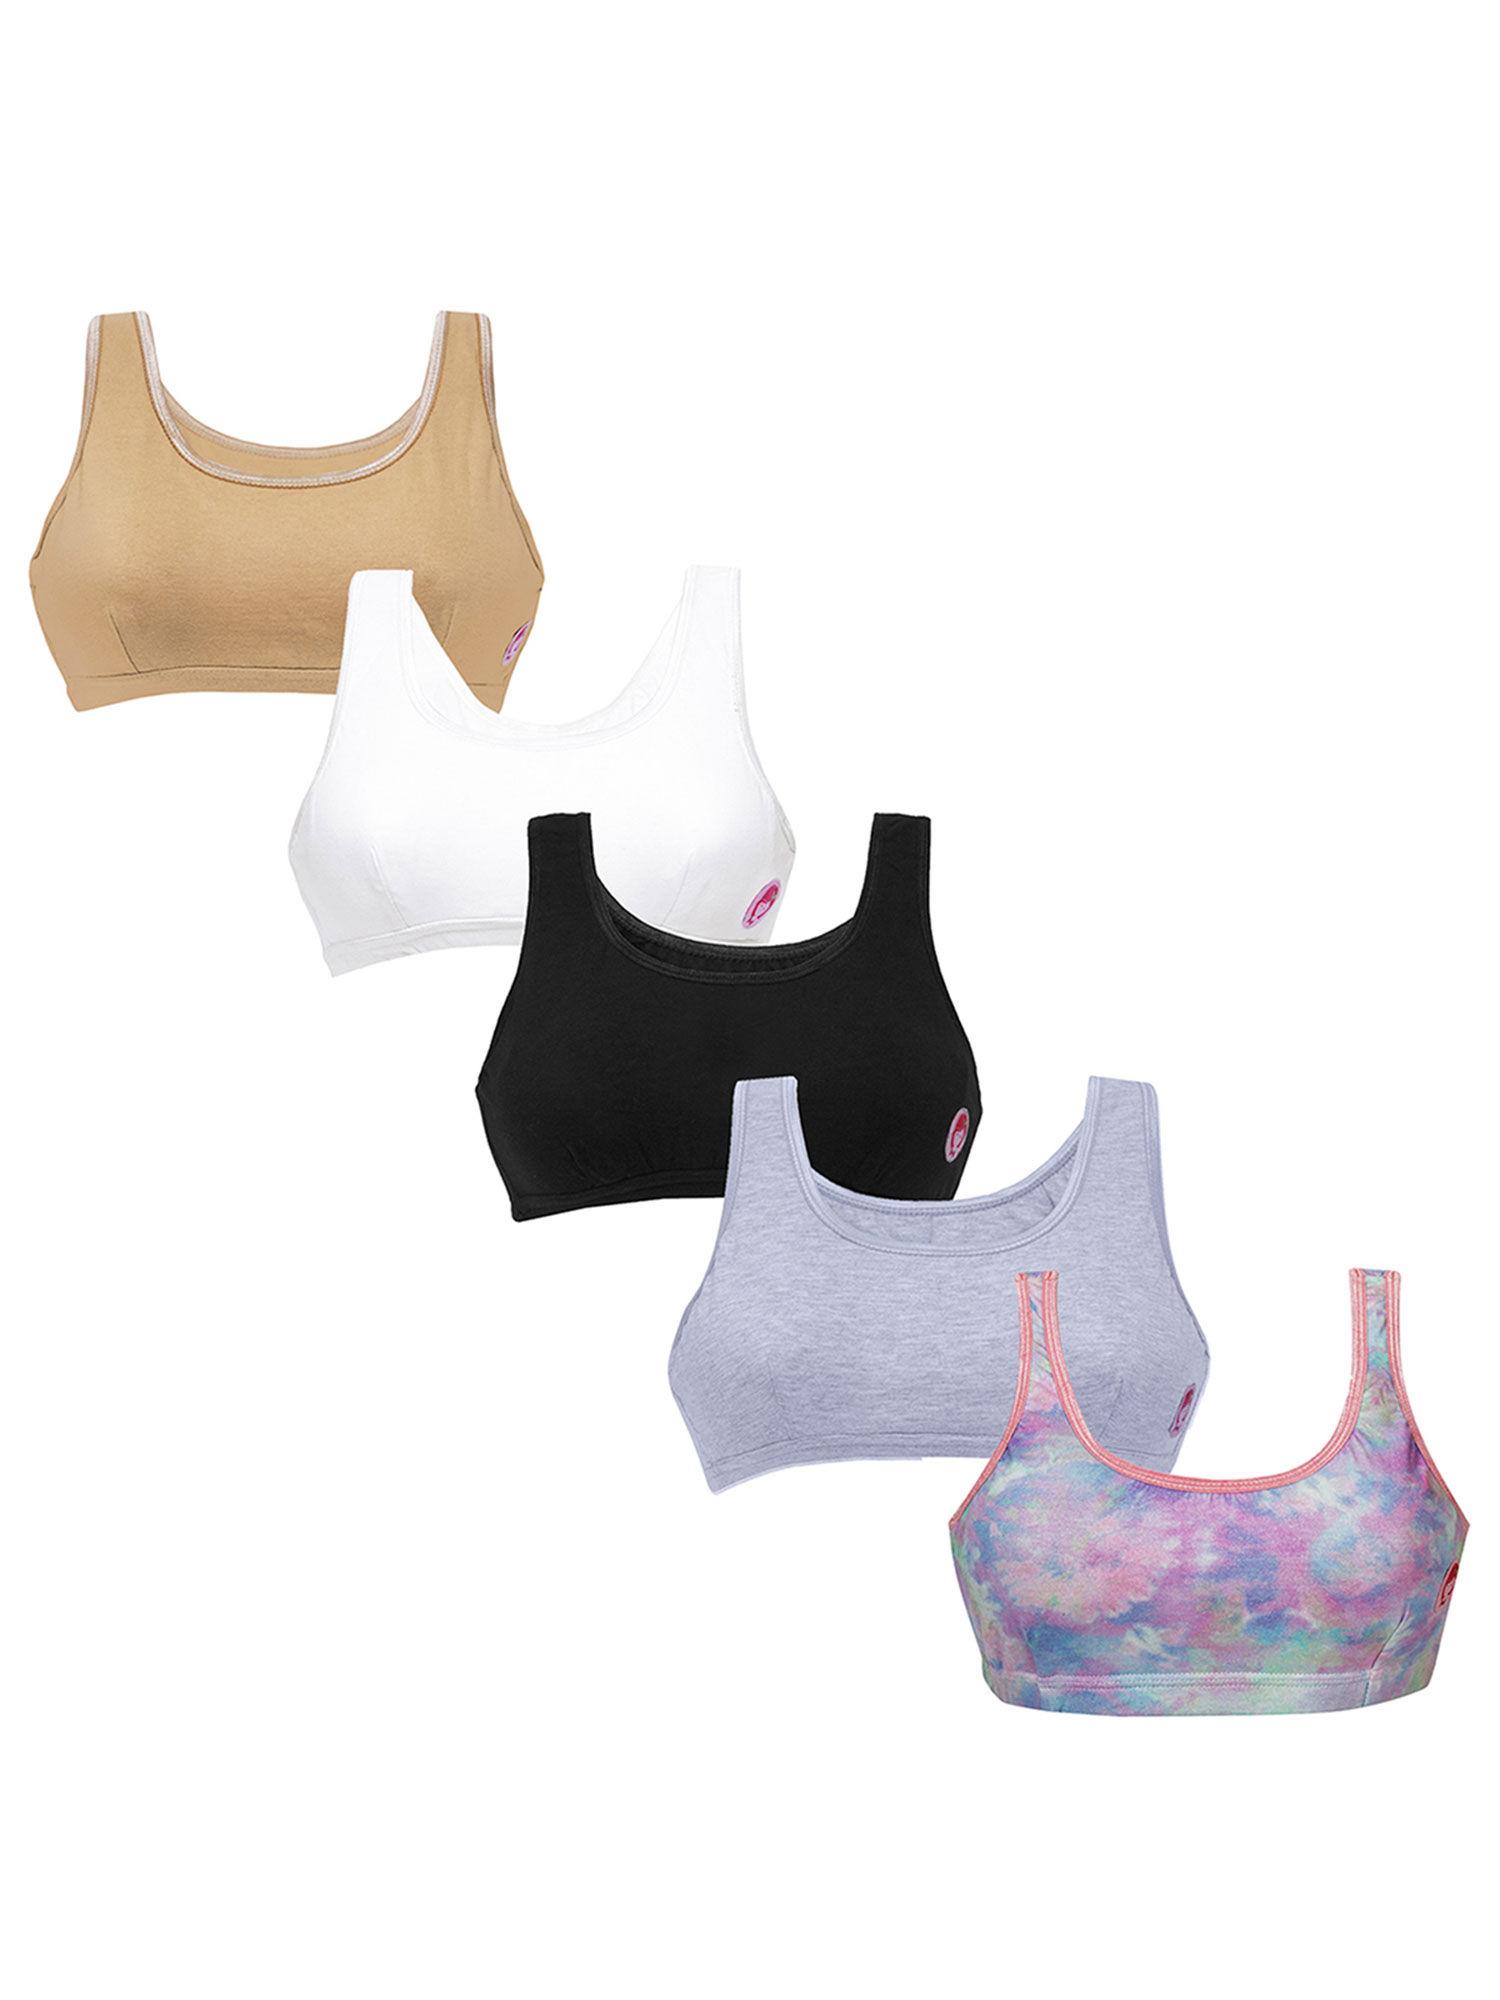 set of 5- 1 lavender tie & die print & 4 basic colors beginners bras for girls